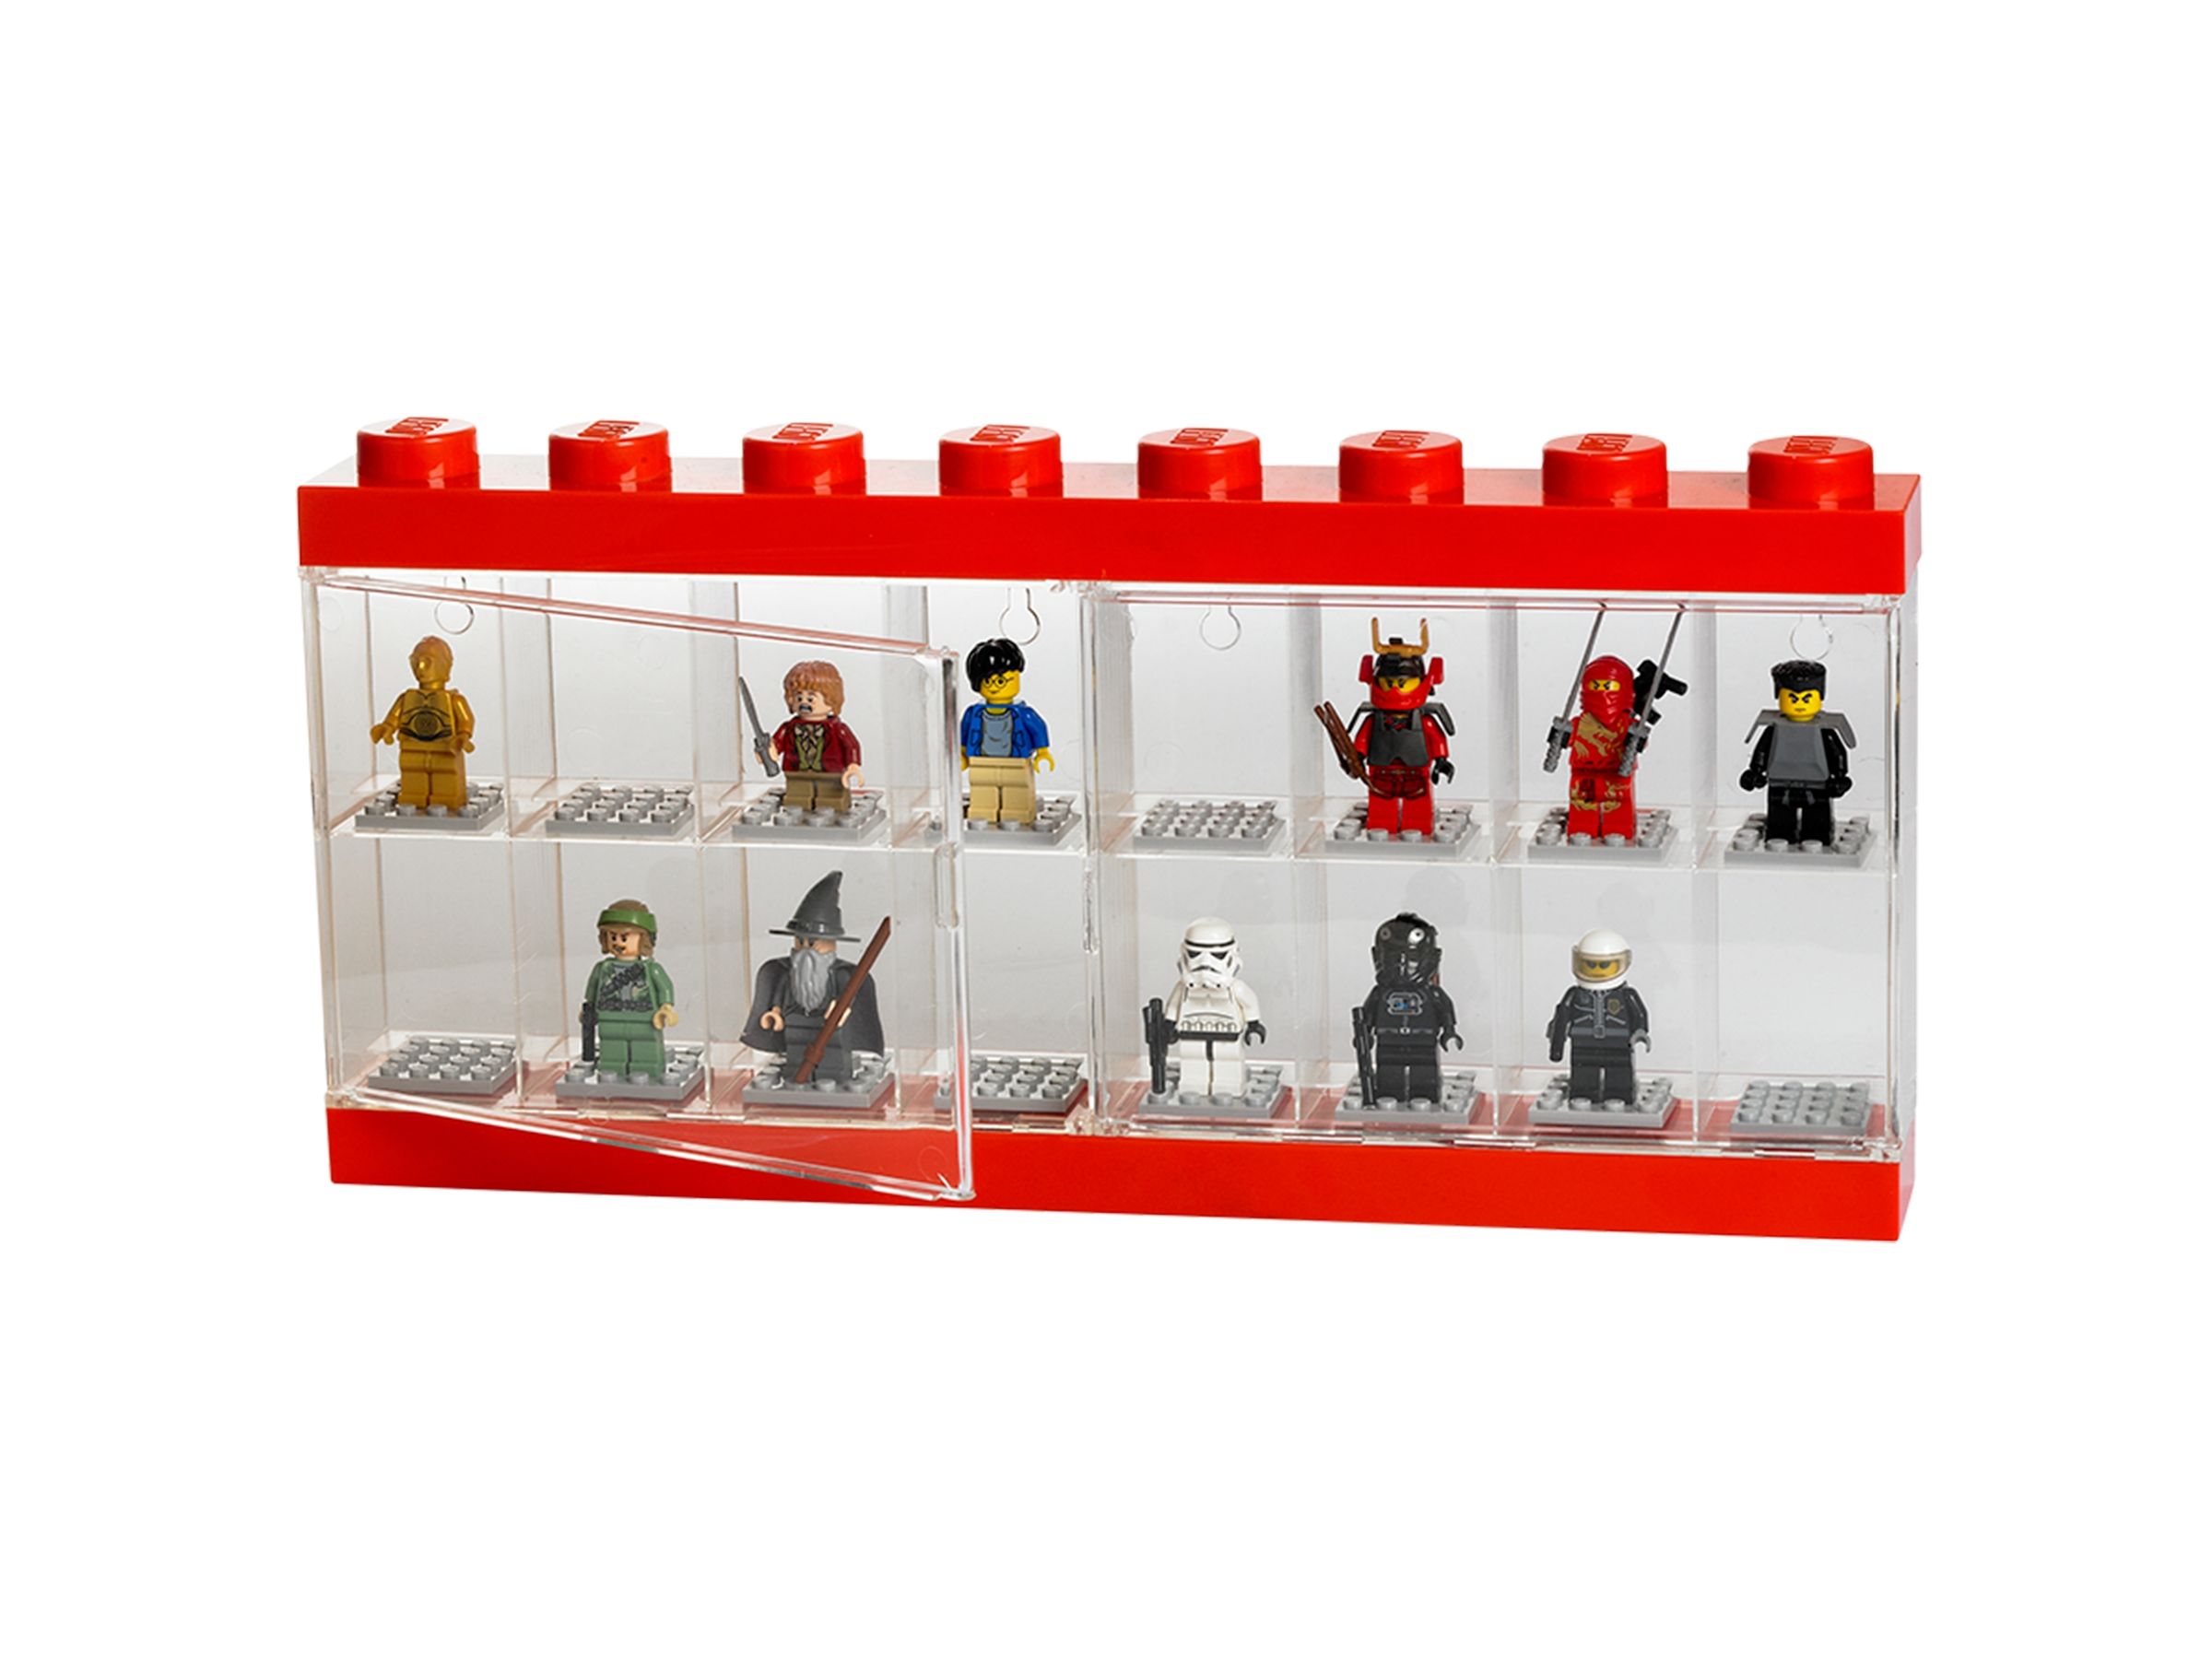 LEGO Gear 5006154 Schaukasten für 16 Minifiguren in Rot LEGO_5004892_alt2.jpg